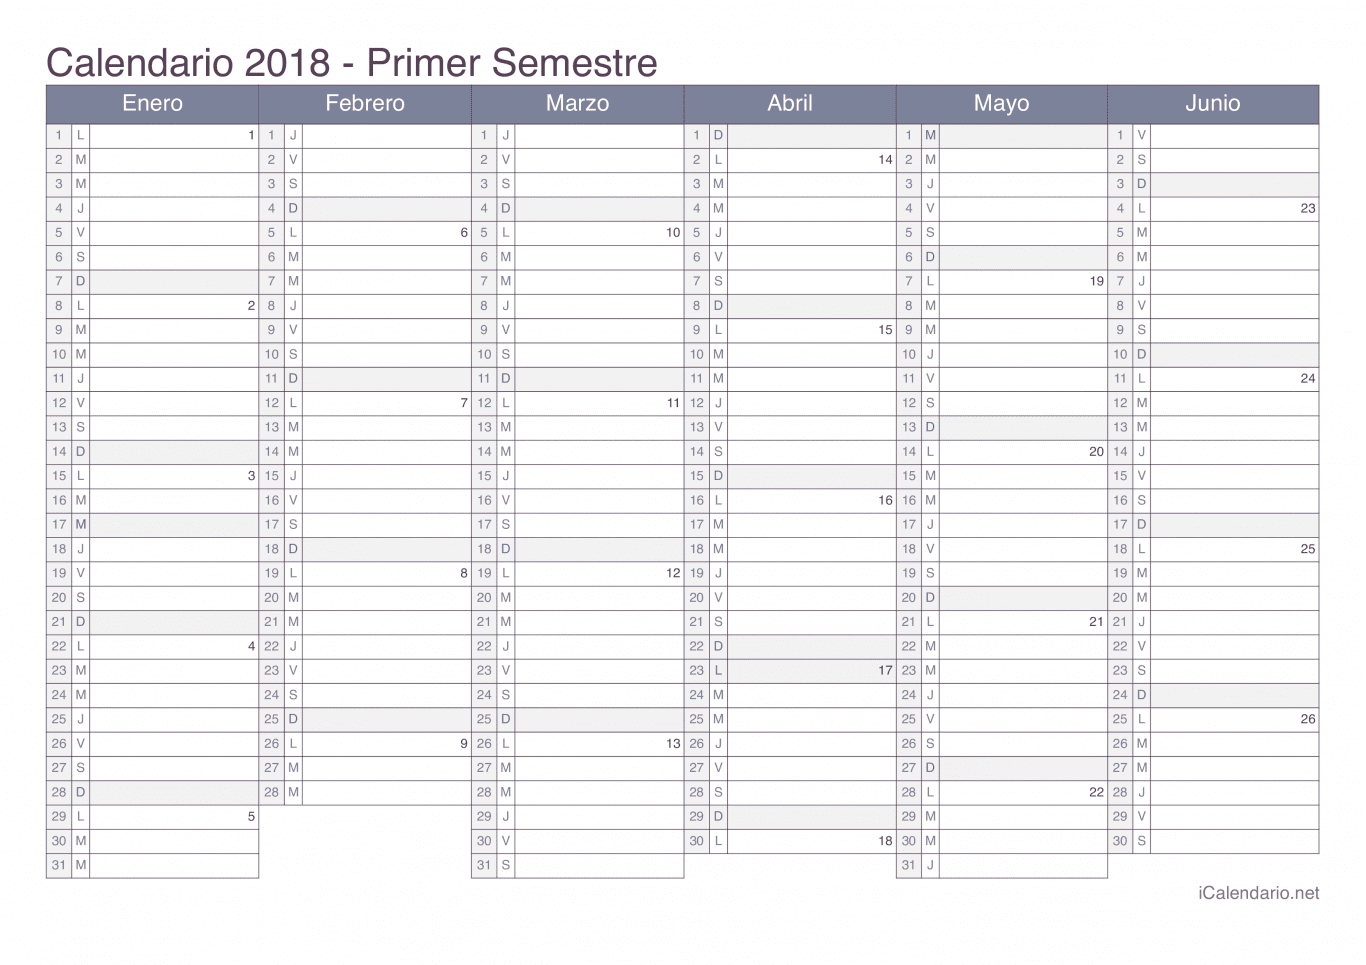 Calendario por semestre com números da semana 2018 - Office